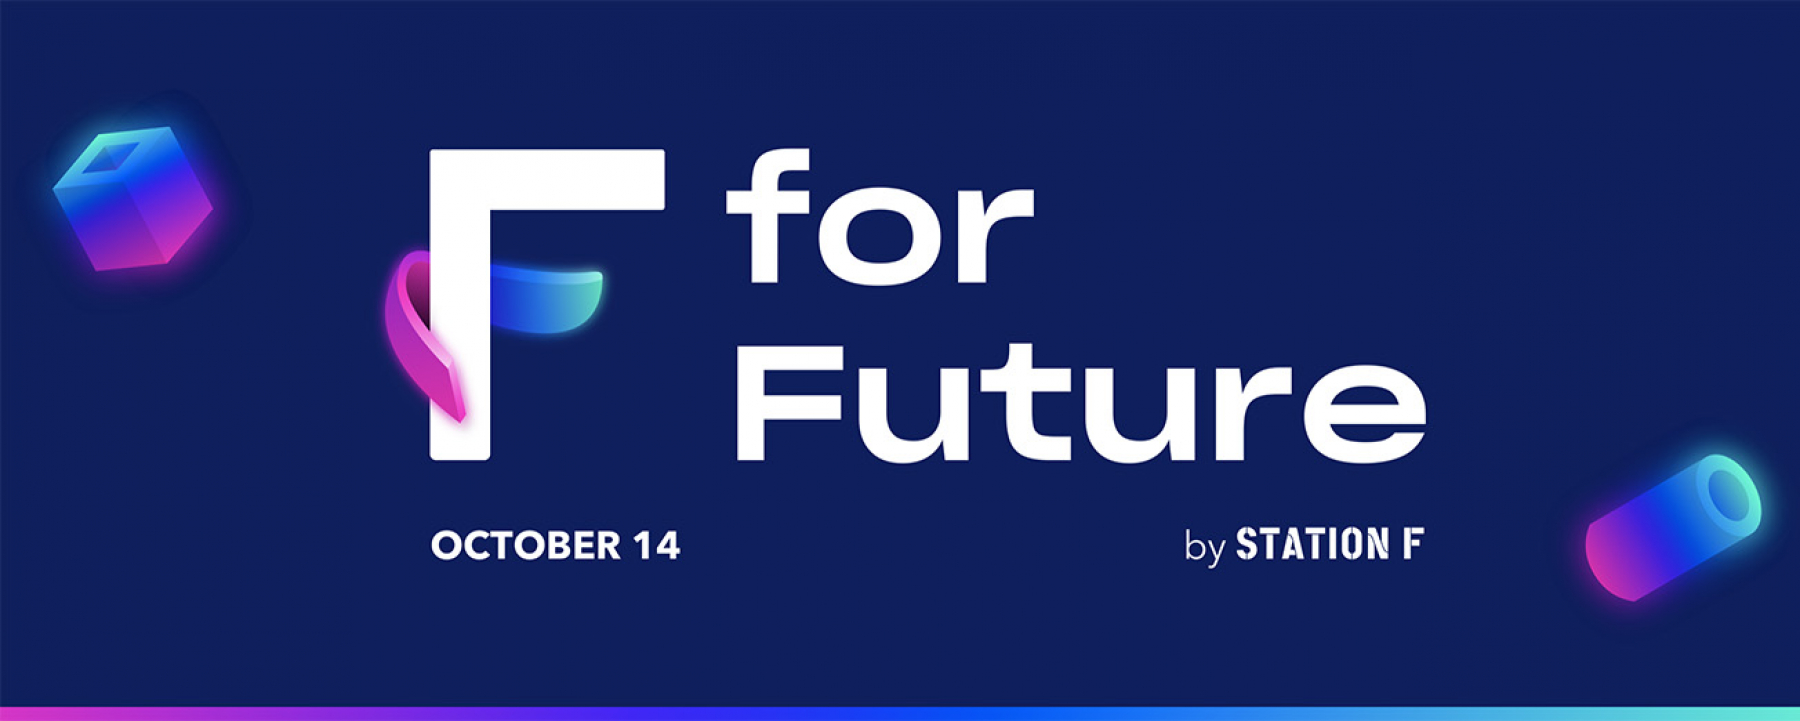 Visuel F for Future, un événement en ligne organisé par Station F.